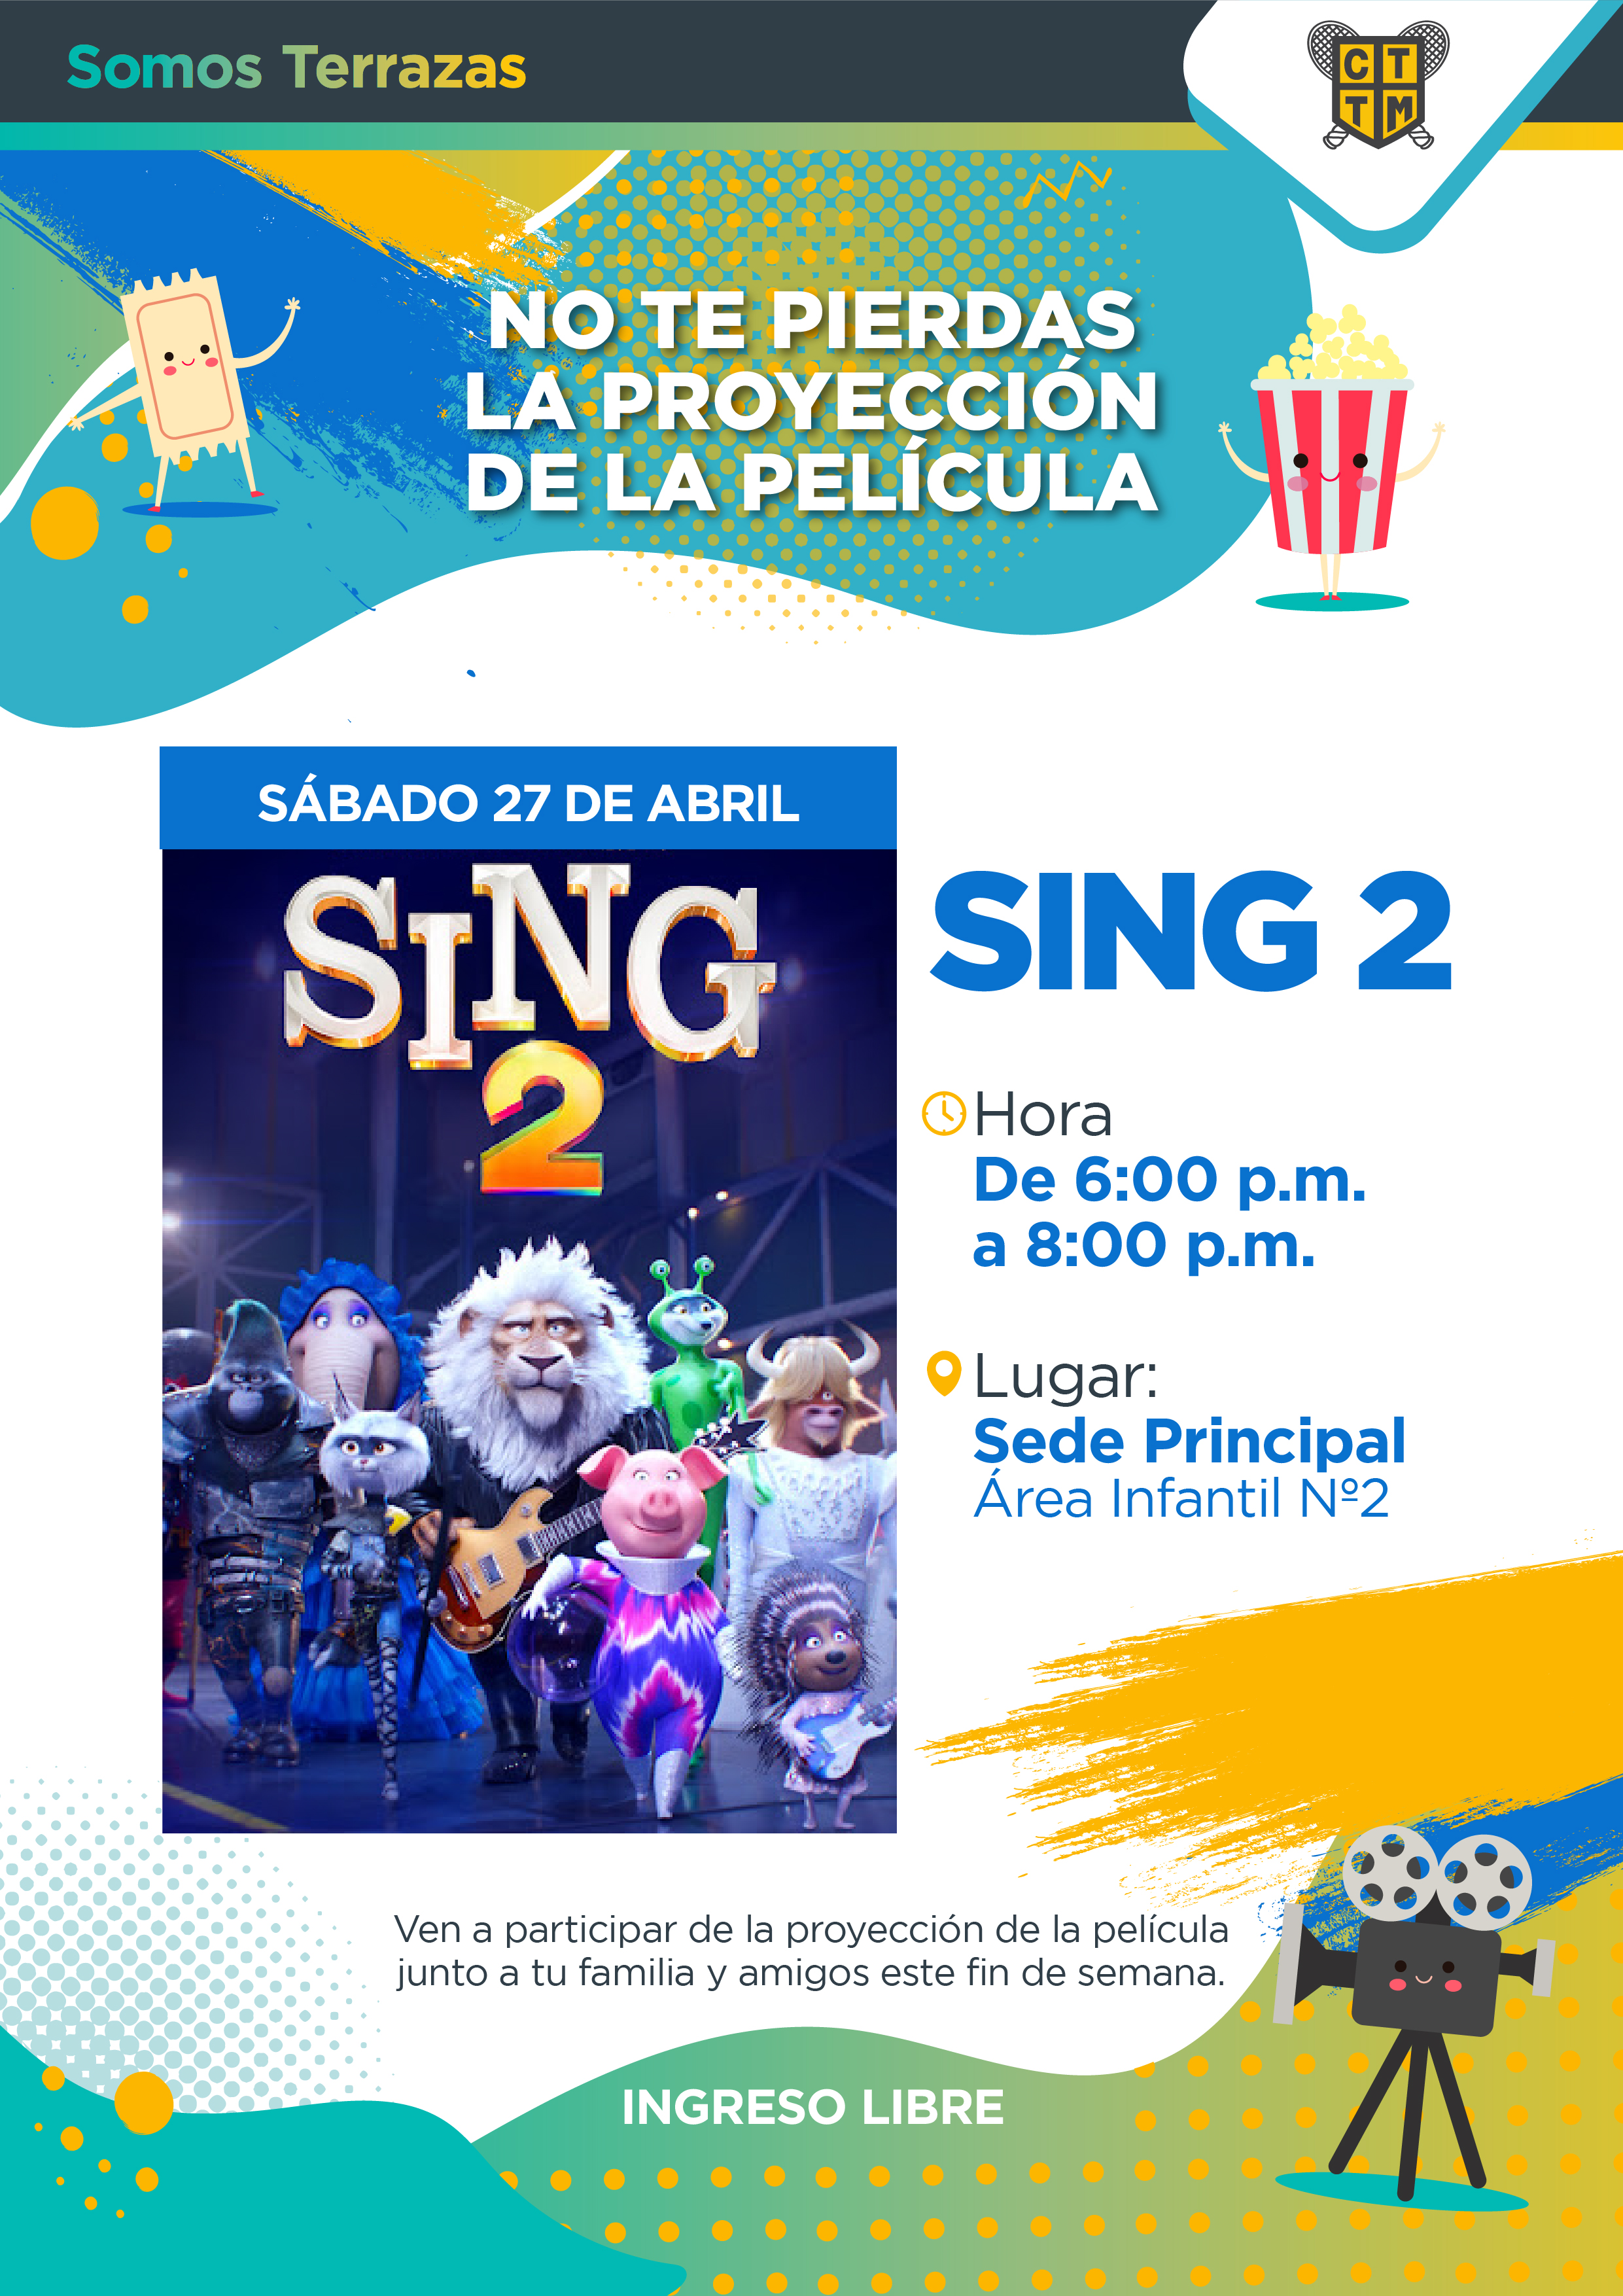 NO TE PIERDAS LA PROYECCIÓN DE LA PELÍCULA "SING 2"